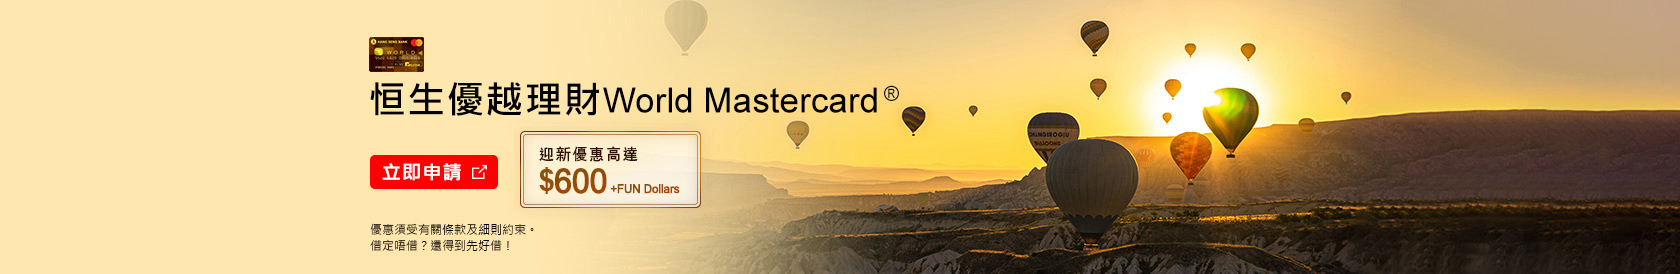 立即申請，恒生優越理財World Mastercard®，迎新優惠高達$800 Cash Dollars